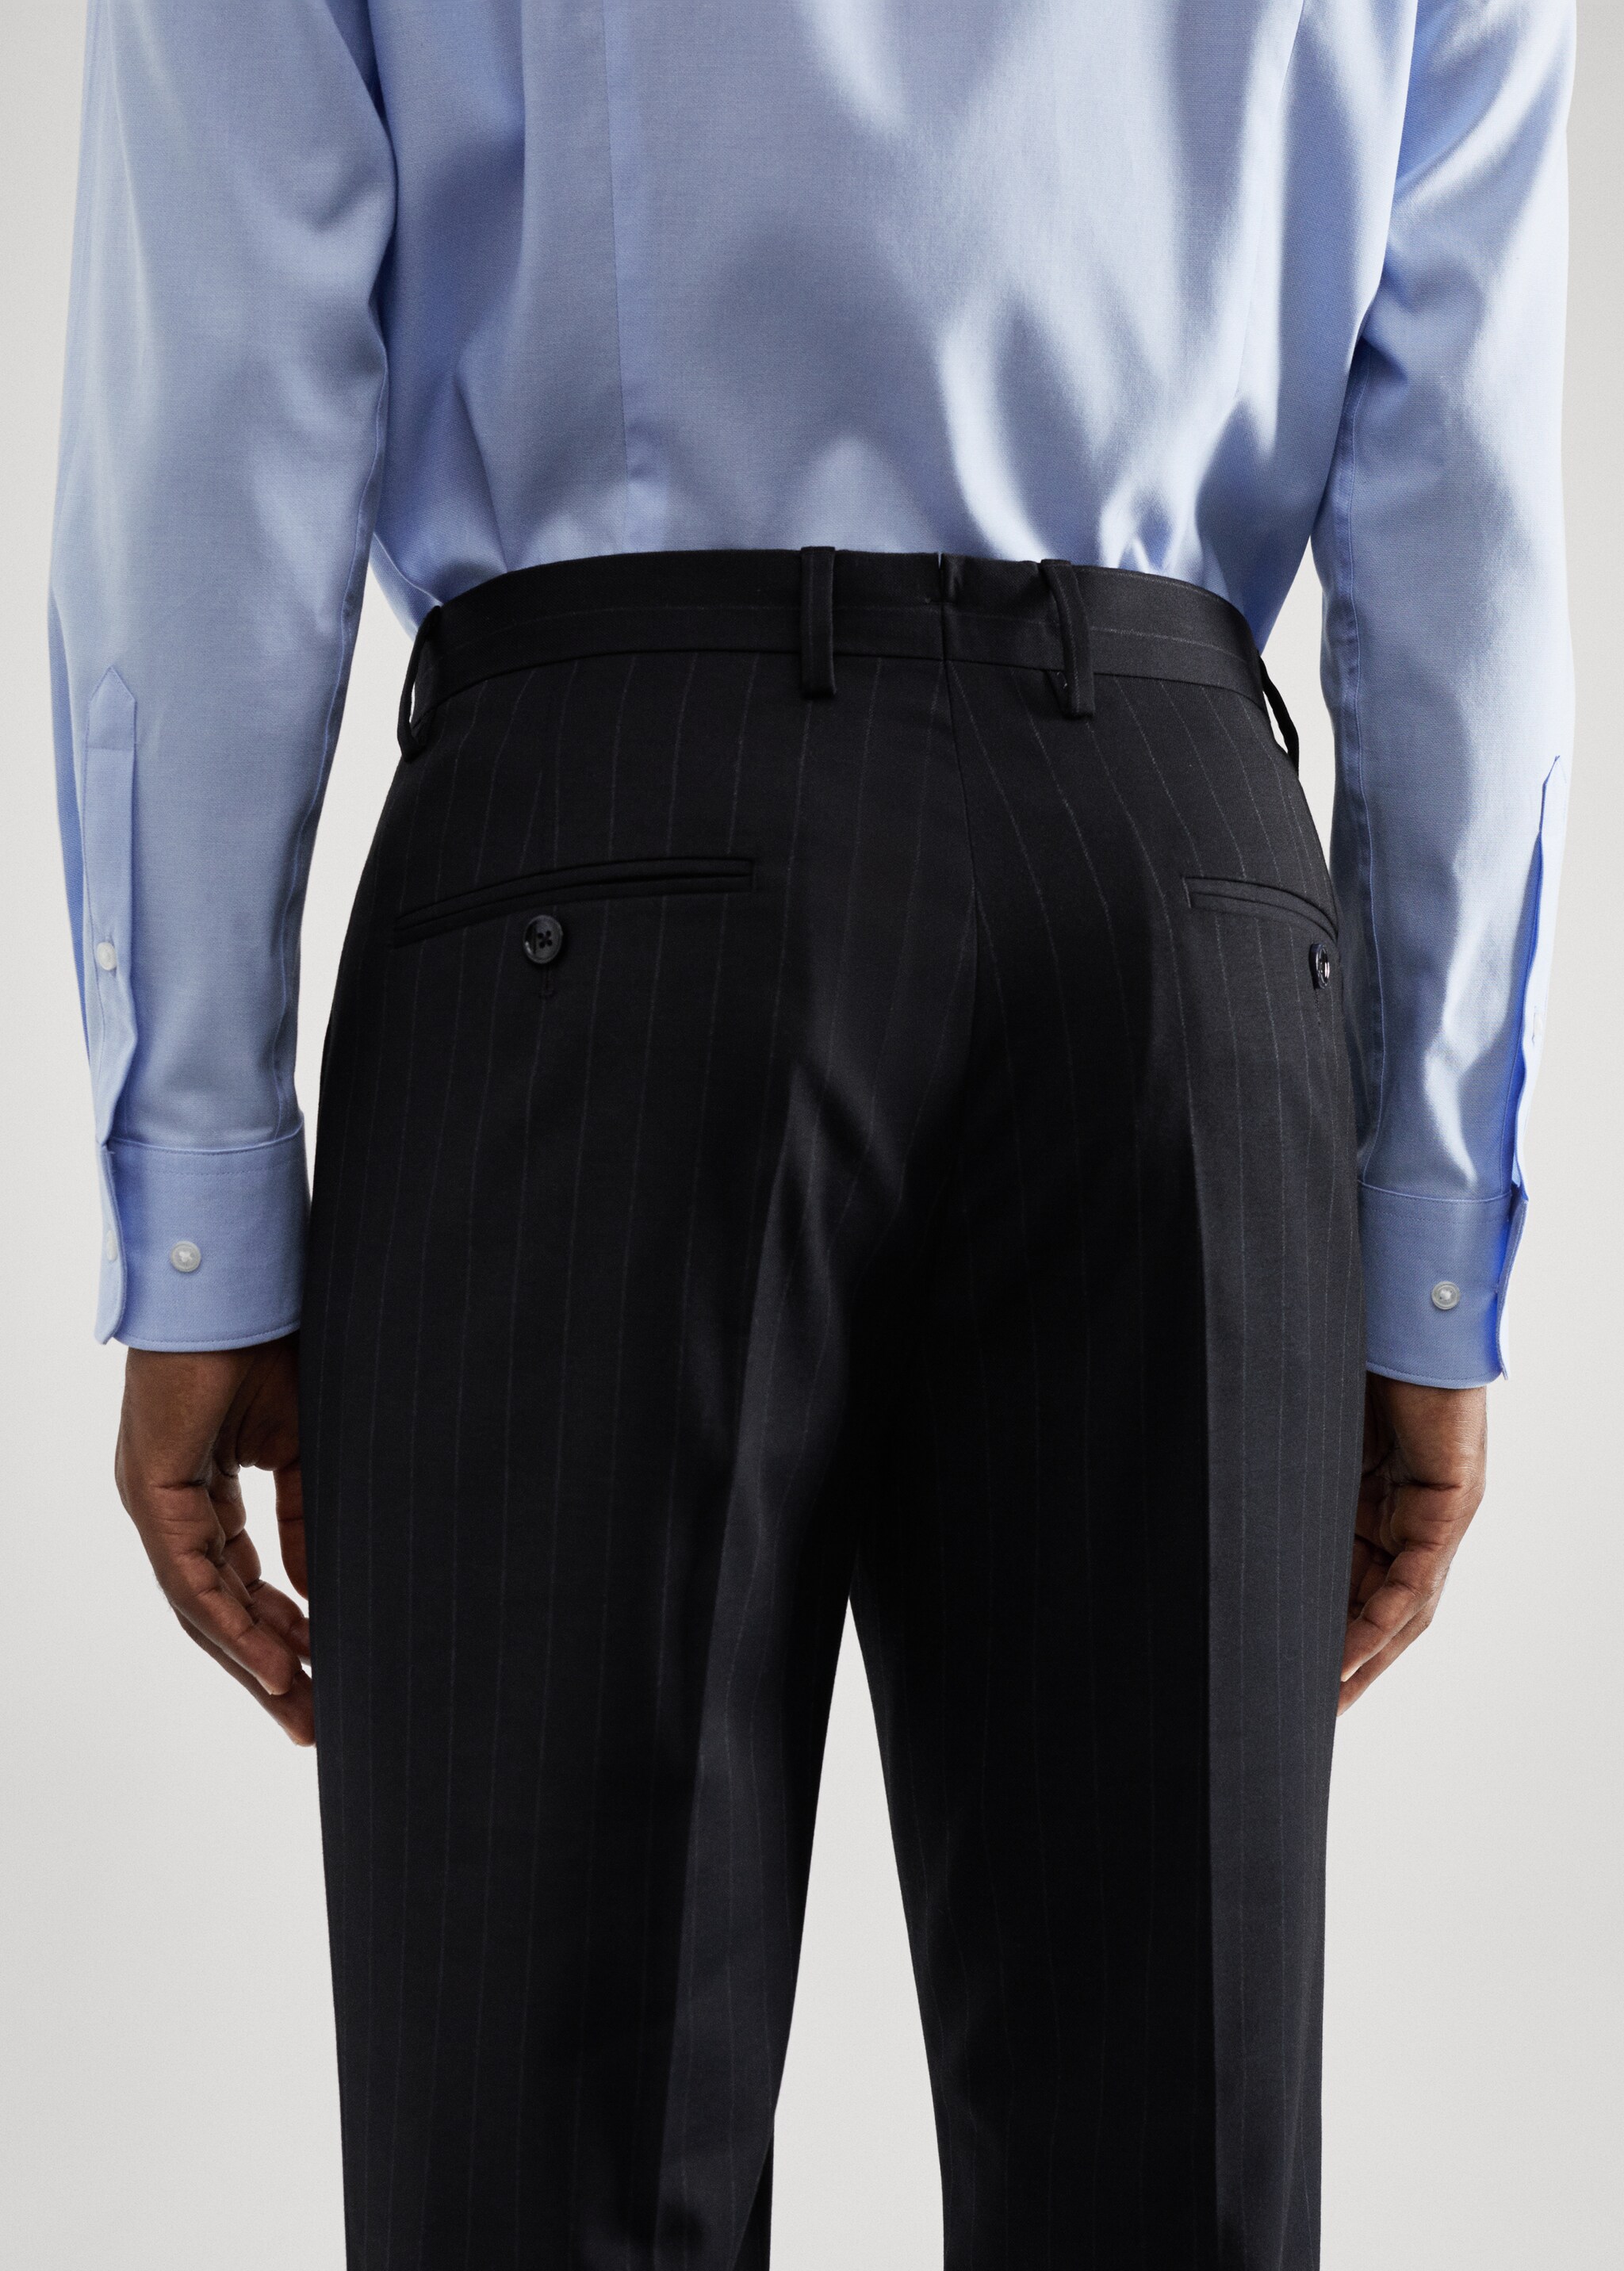 Pantaloni completo slim-fit tessuto stretch - Dettaglio dell'articolo 6